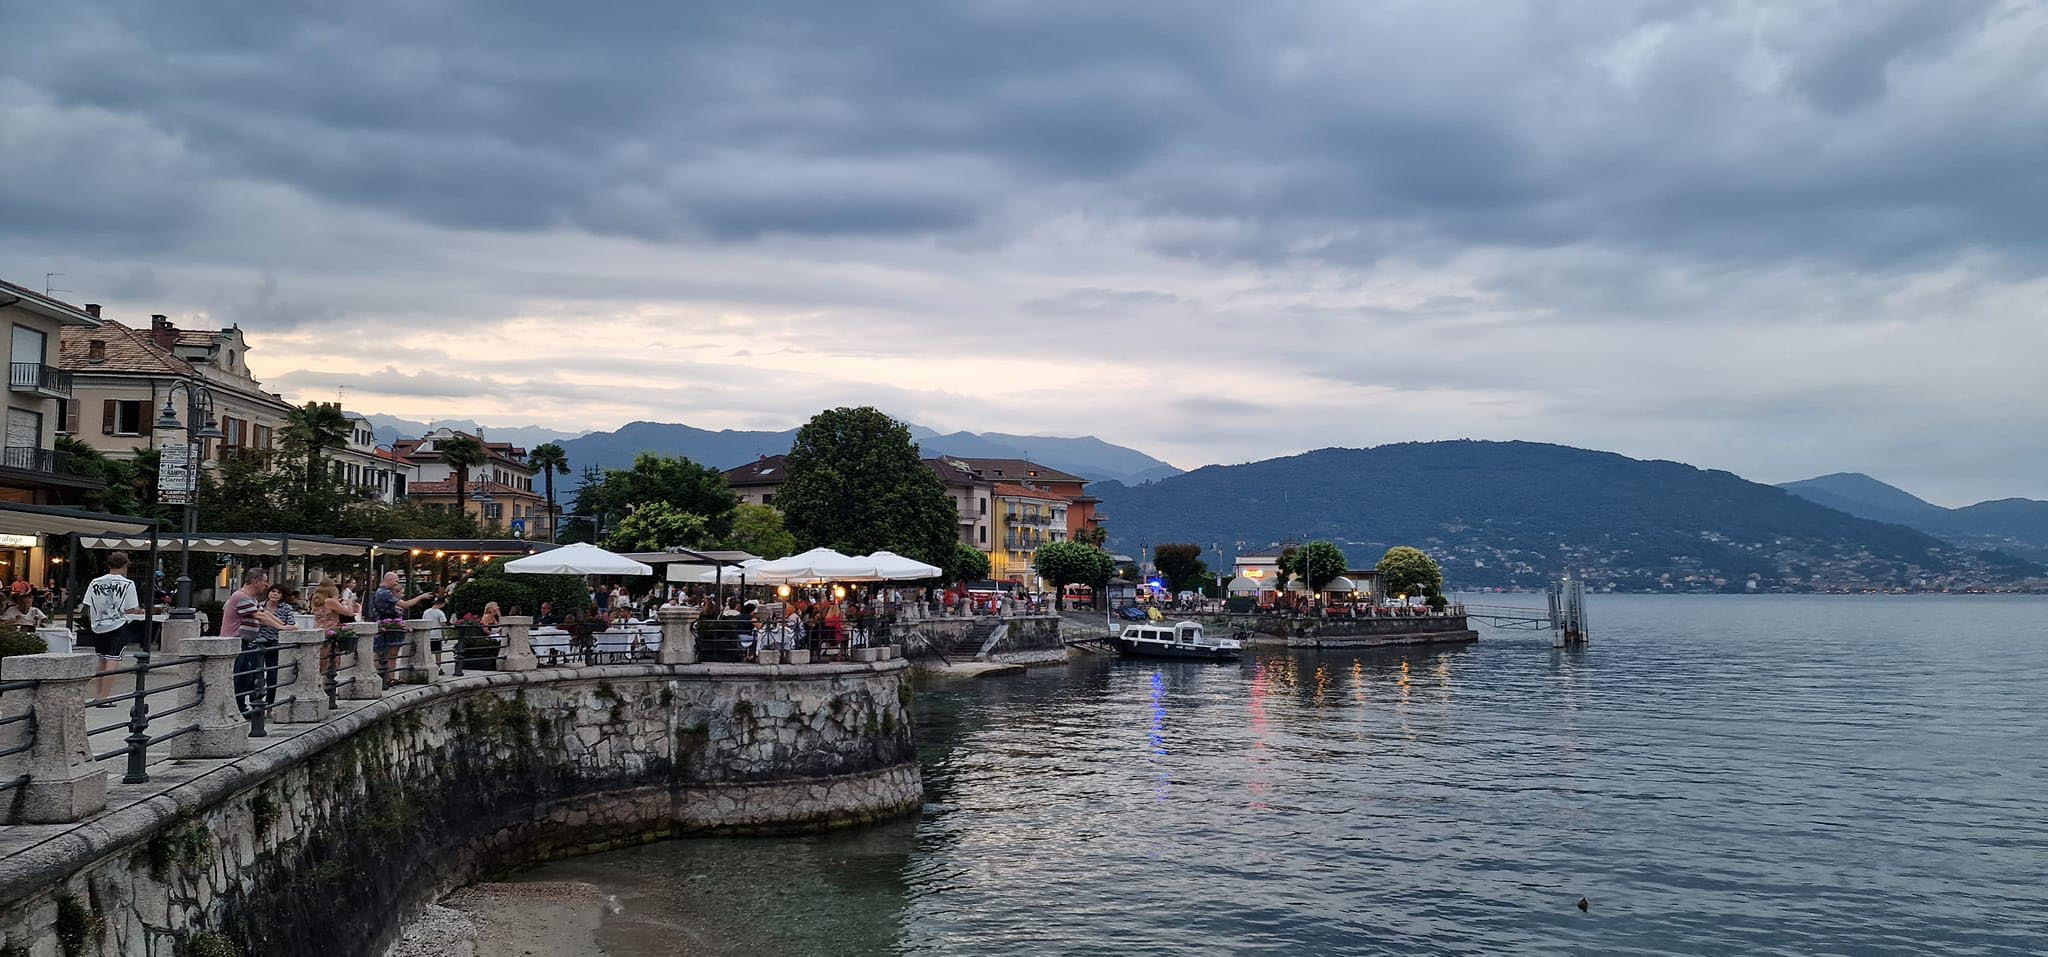 Stresa, thị trấn nghỉ dưỡng thơ mộng bên hồ Maggiore